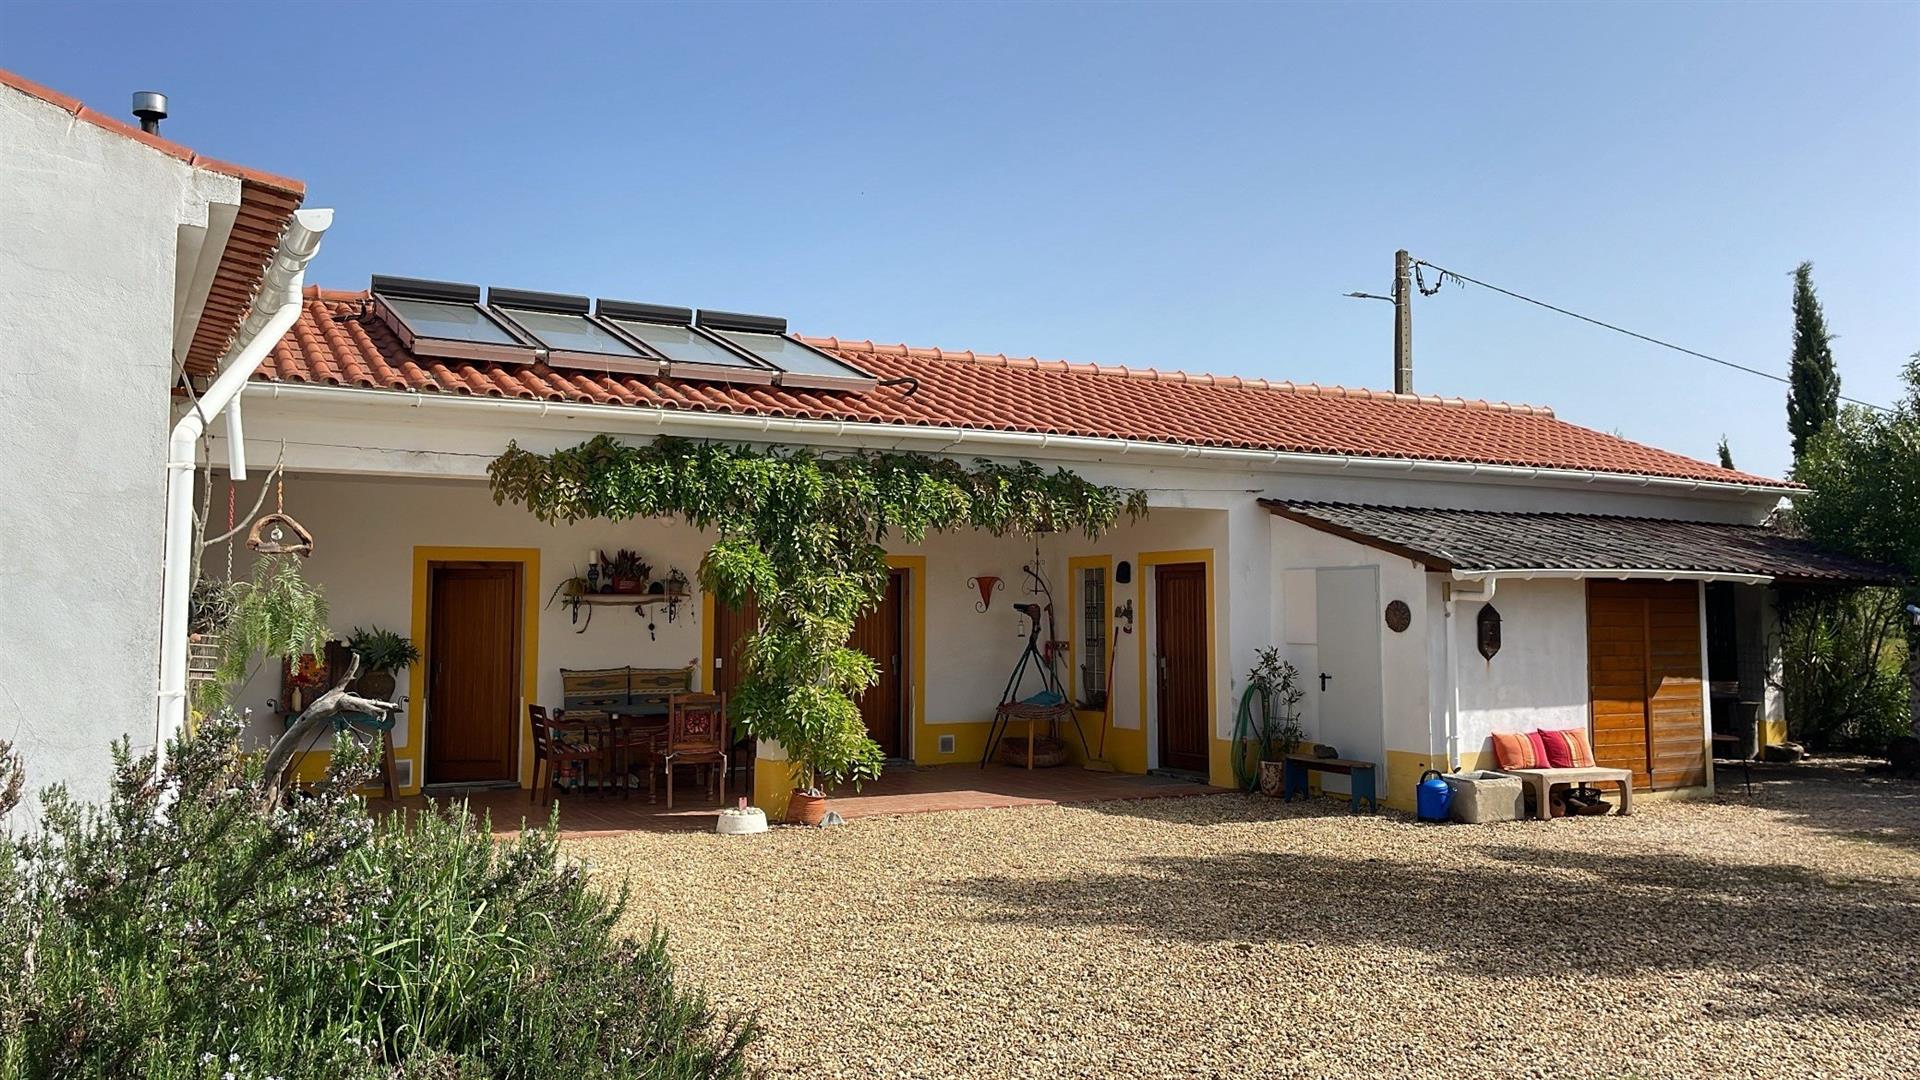 Exklusiv - Landhaus mit 3 Schlafzimmern und 2,9 ha Land zu verkaufen - zwischen São Teotónio und Sa